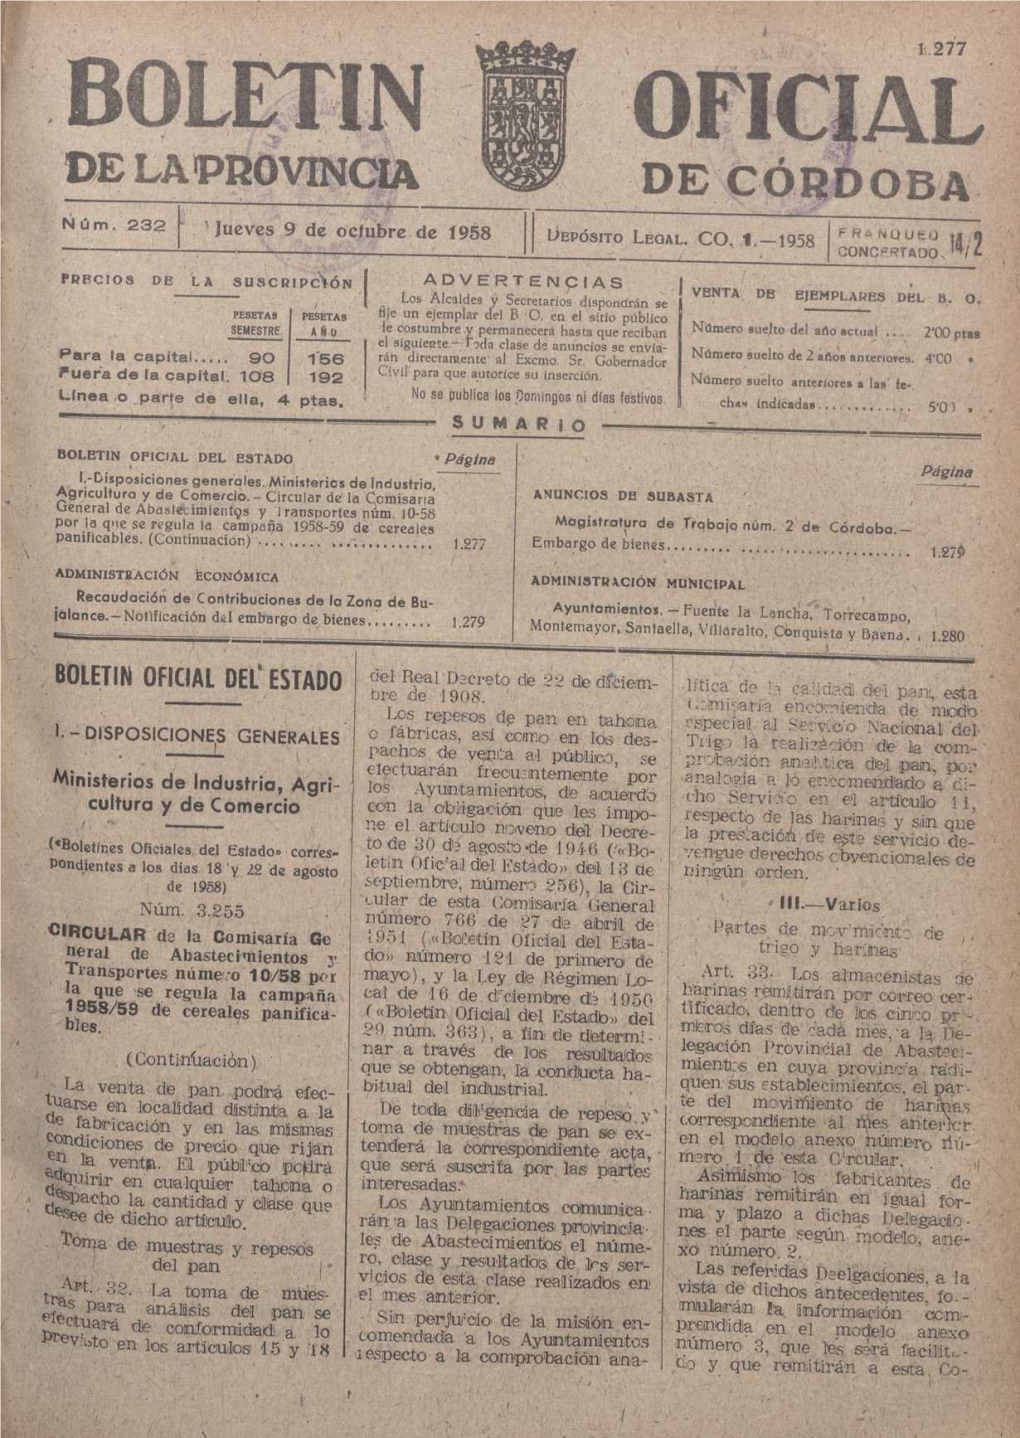 B LIETIN OFICIAL DE LA PROVINCIA DE CÓRDOBA Ñú M 232 Jueves 9' De Octubre De F 1958 Ljepósito LEGAL